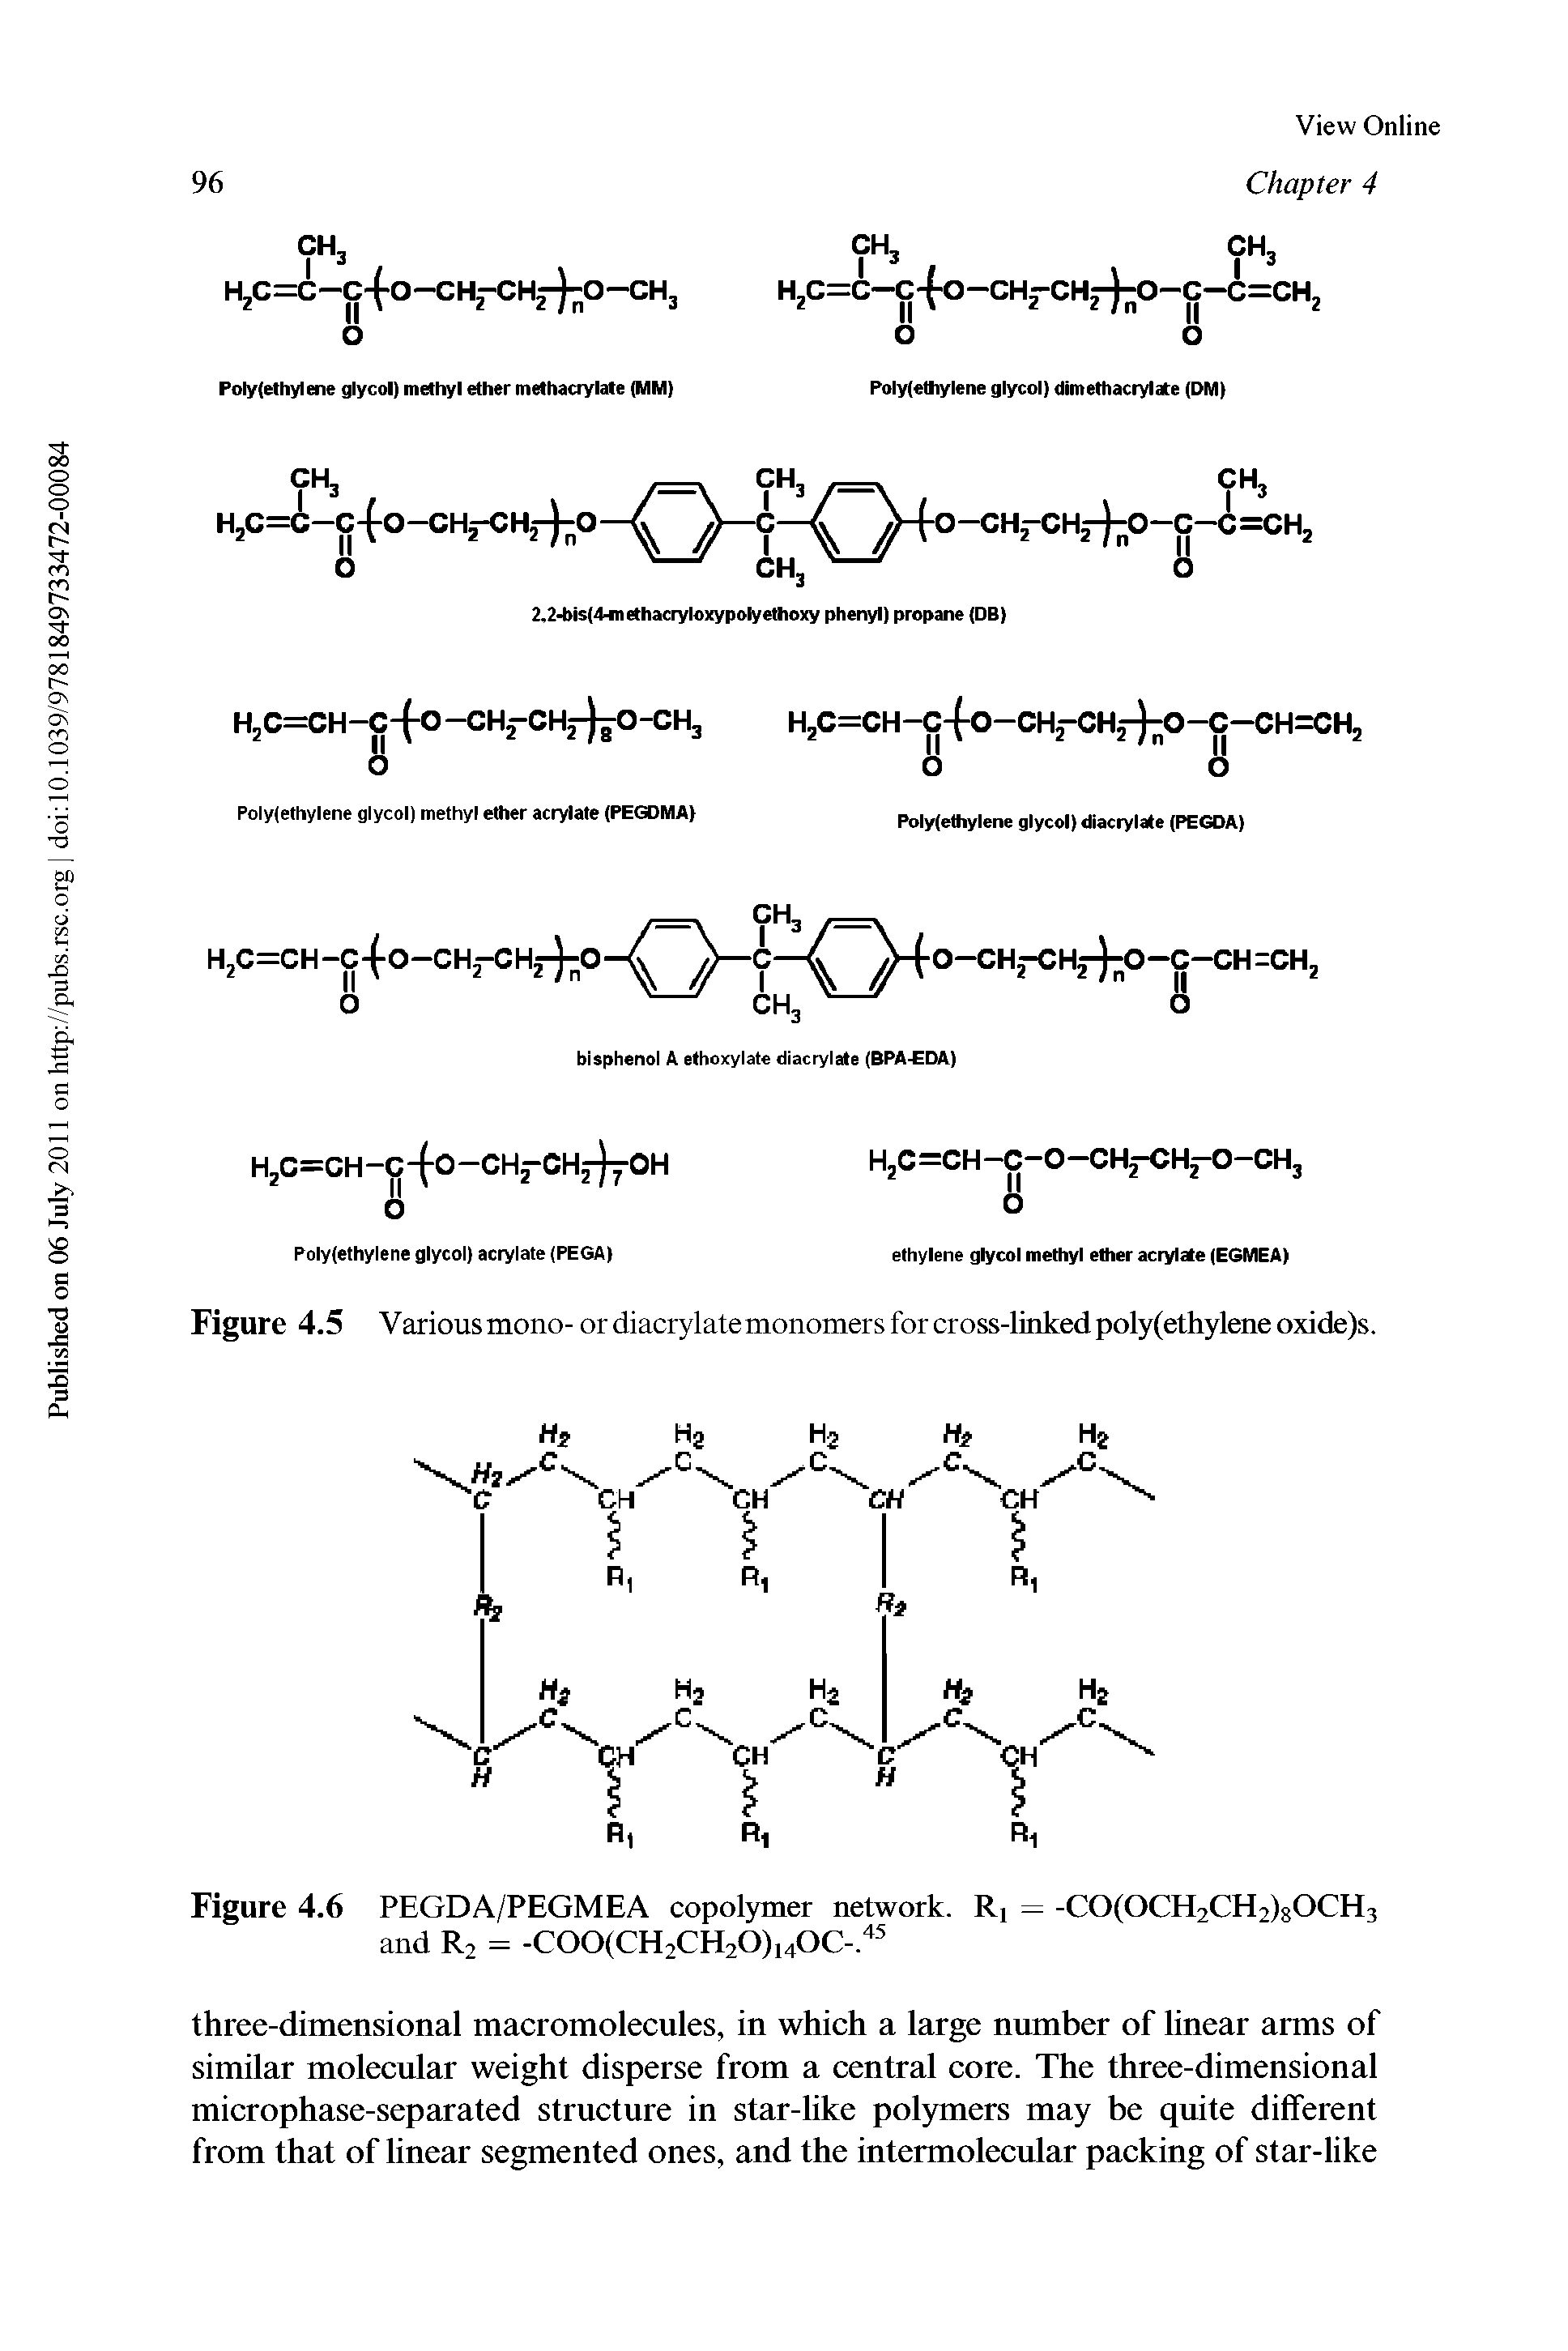 Figure 4.6 PEGDA/PEGMEA copolymer network. Ri = -CO(OCH2CH2)80CH3 and R2 = -C00(CH2CH20)i40C-. ...